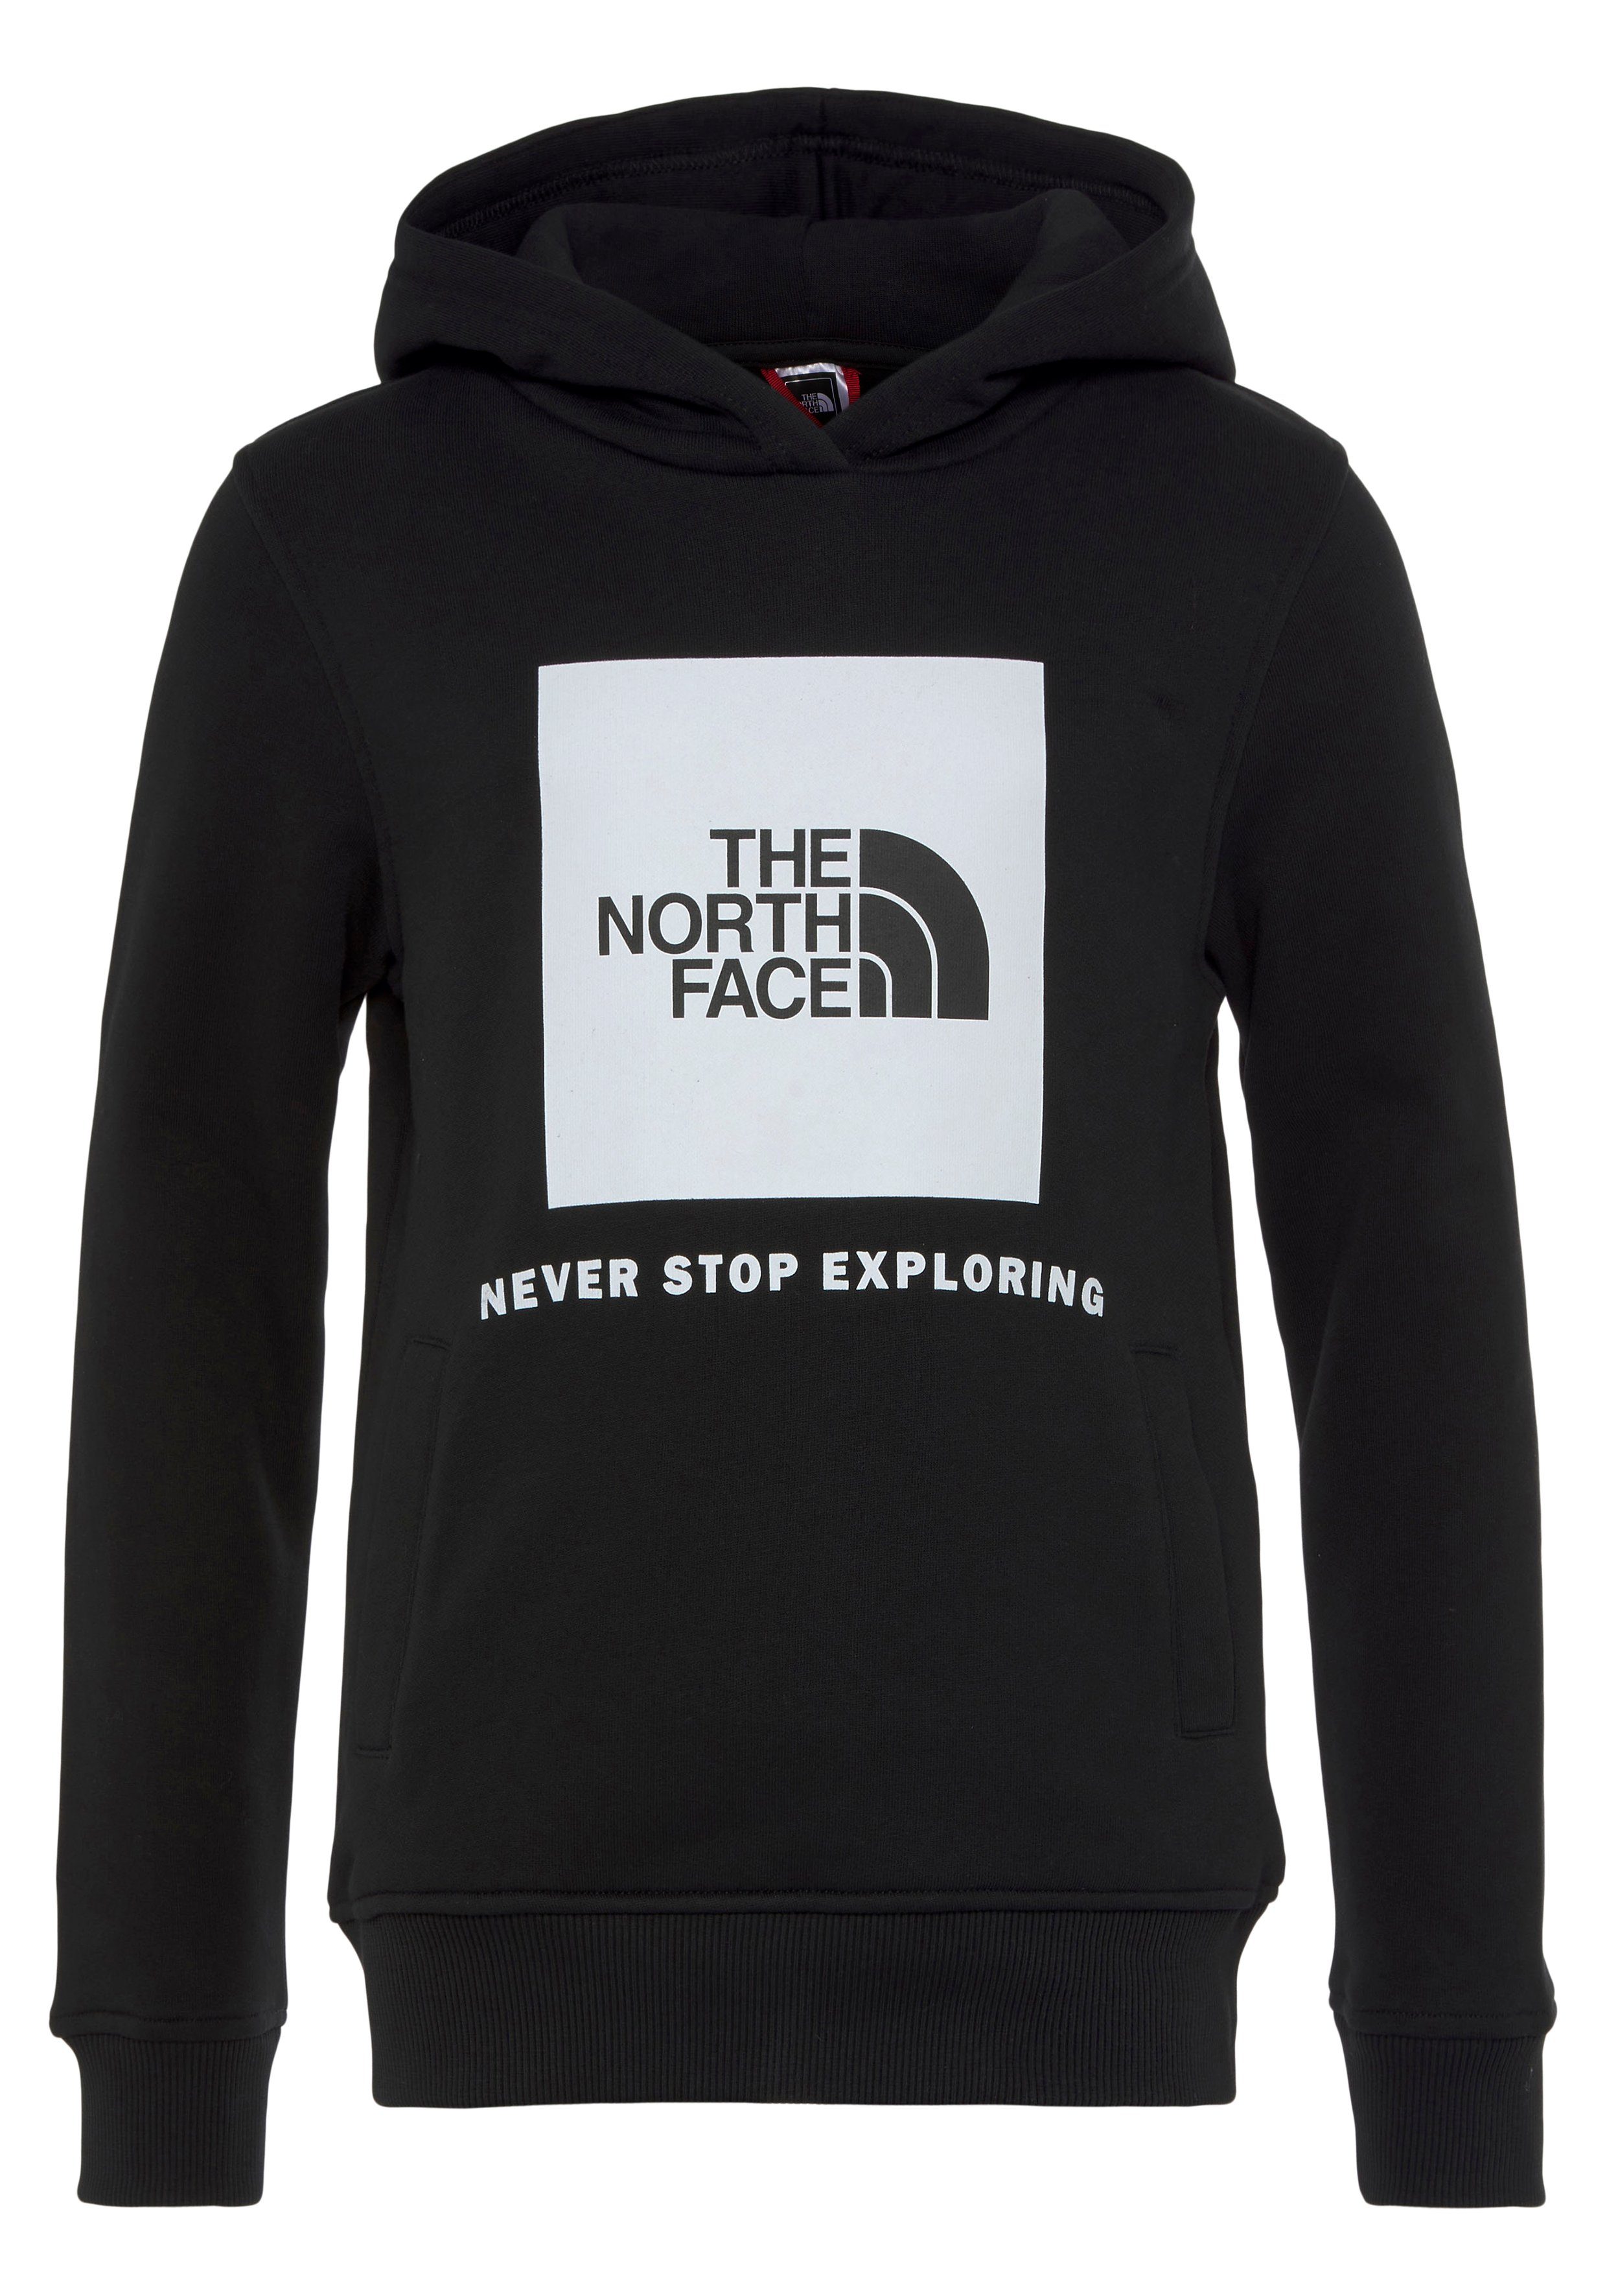 Kapuzensweatshirt für BOX schwarz TEENS Kinder Face The North